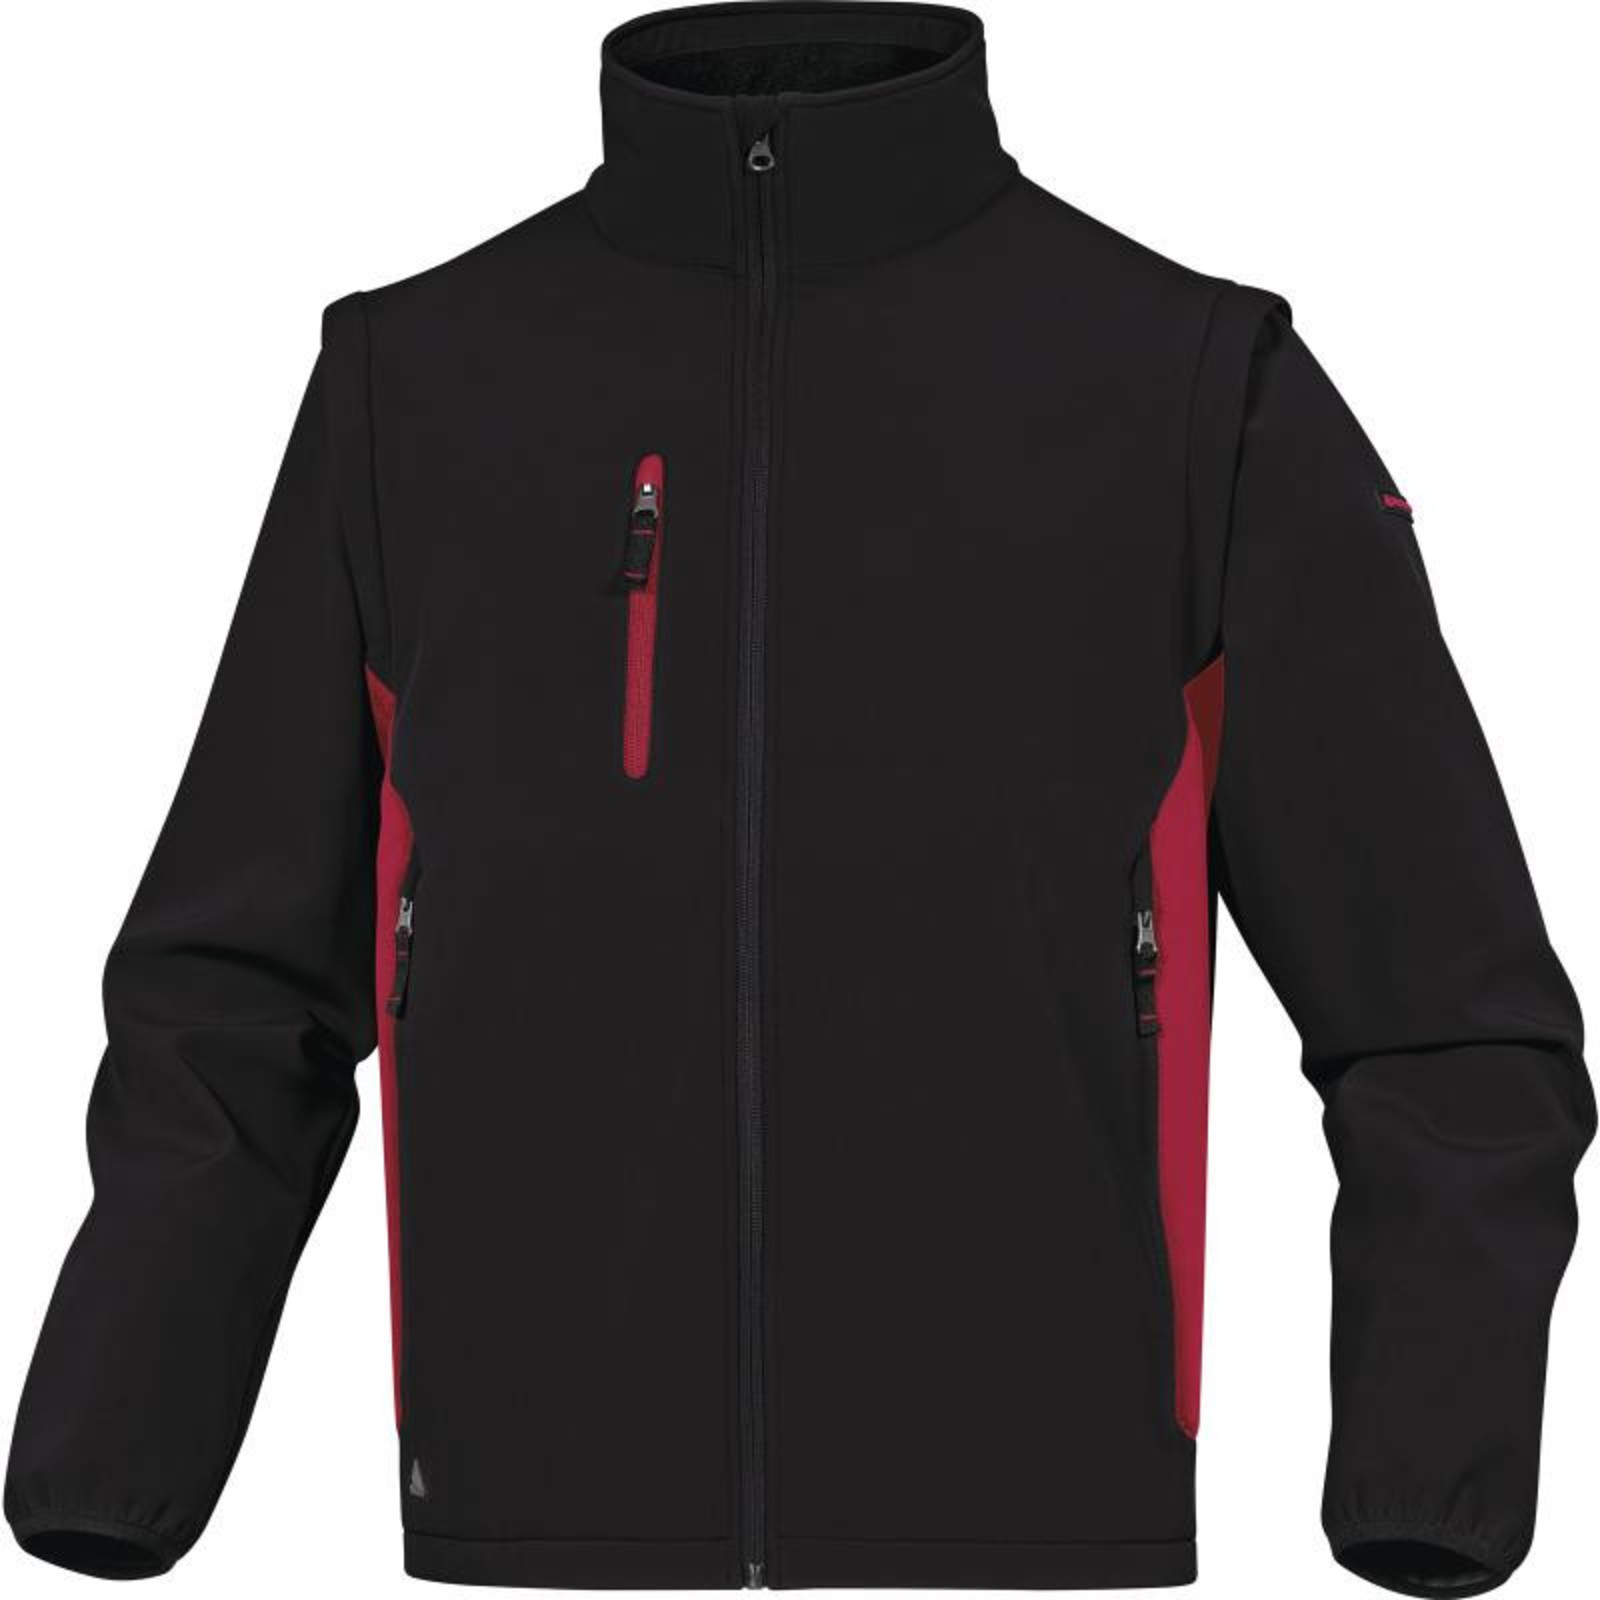 Softshellová bunda Delta Plus Mysen2 2v1 - veľkosť: L, farba: čierna/červená